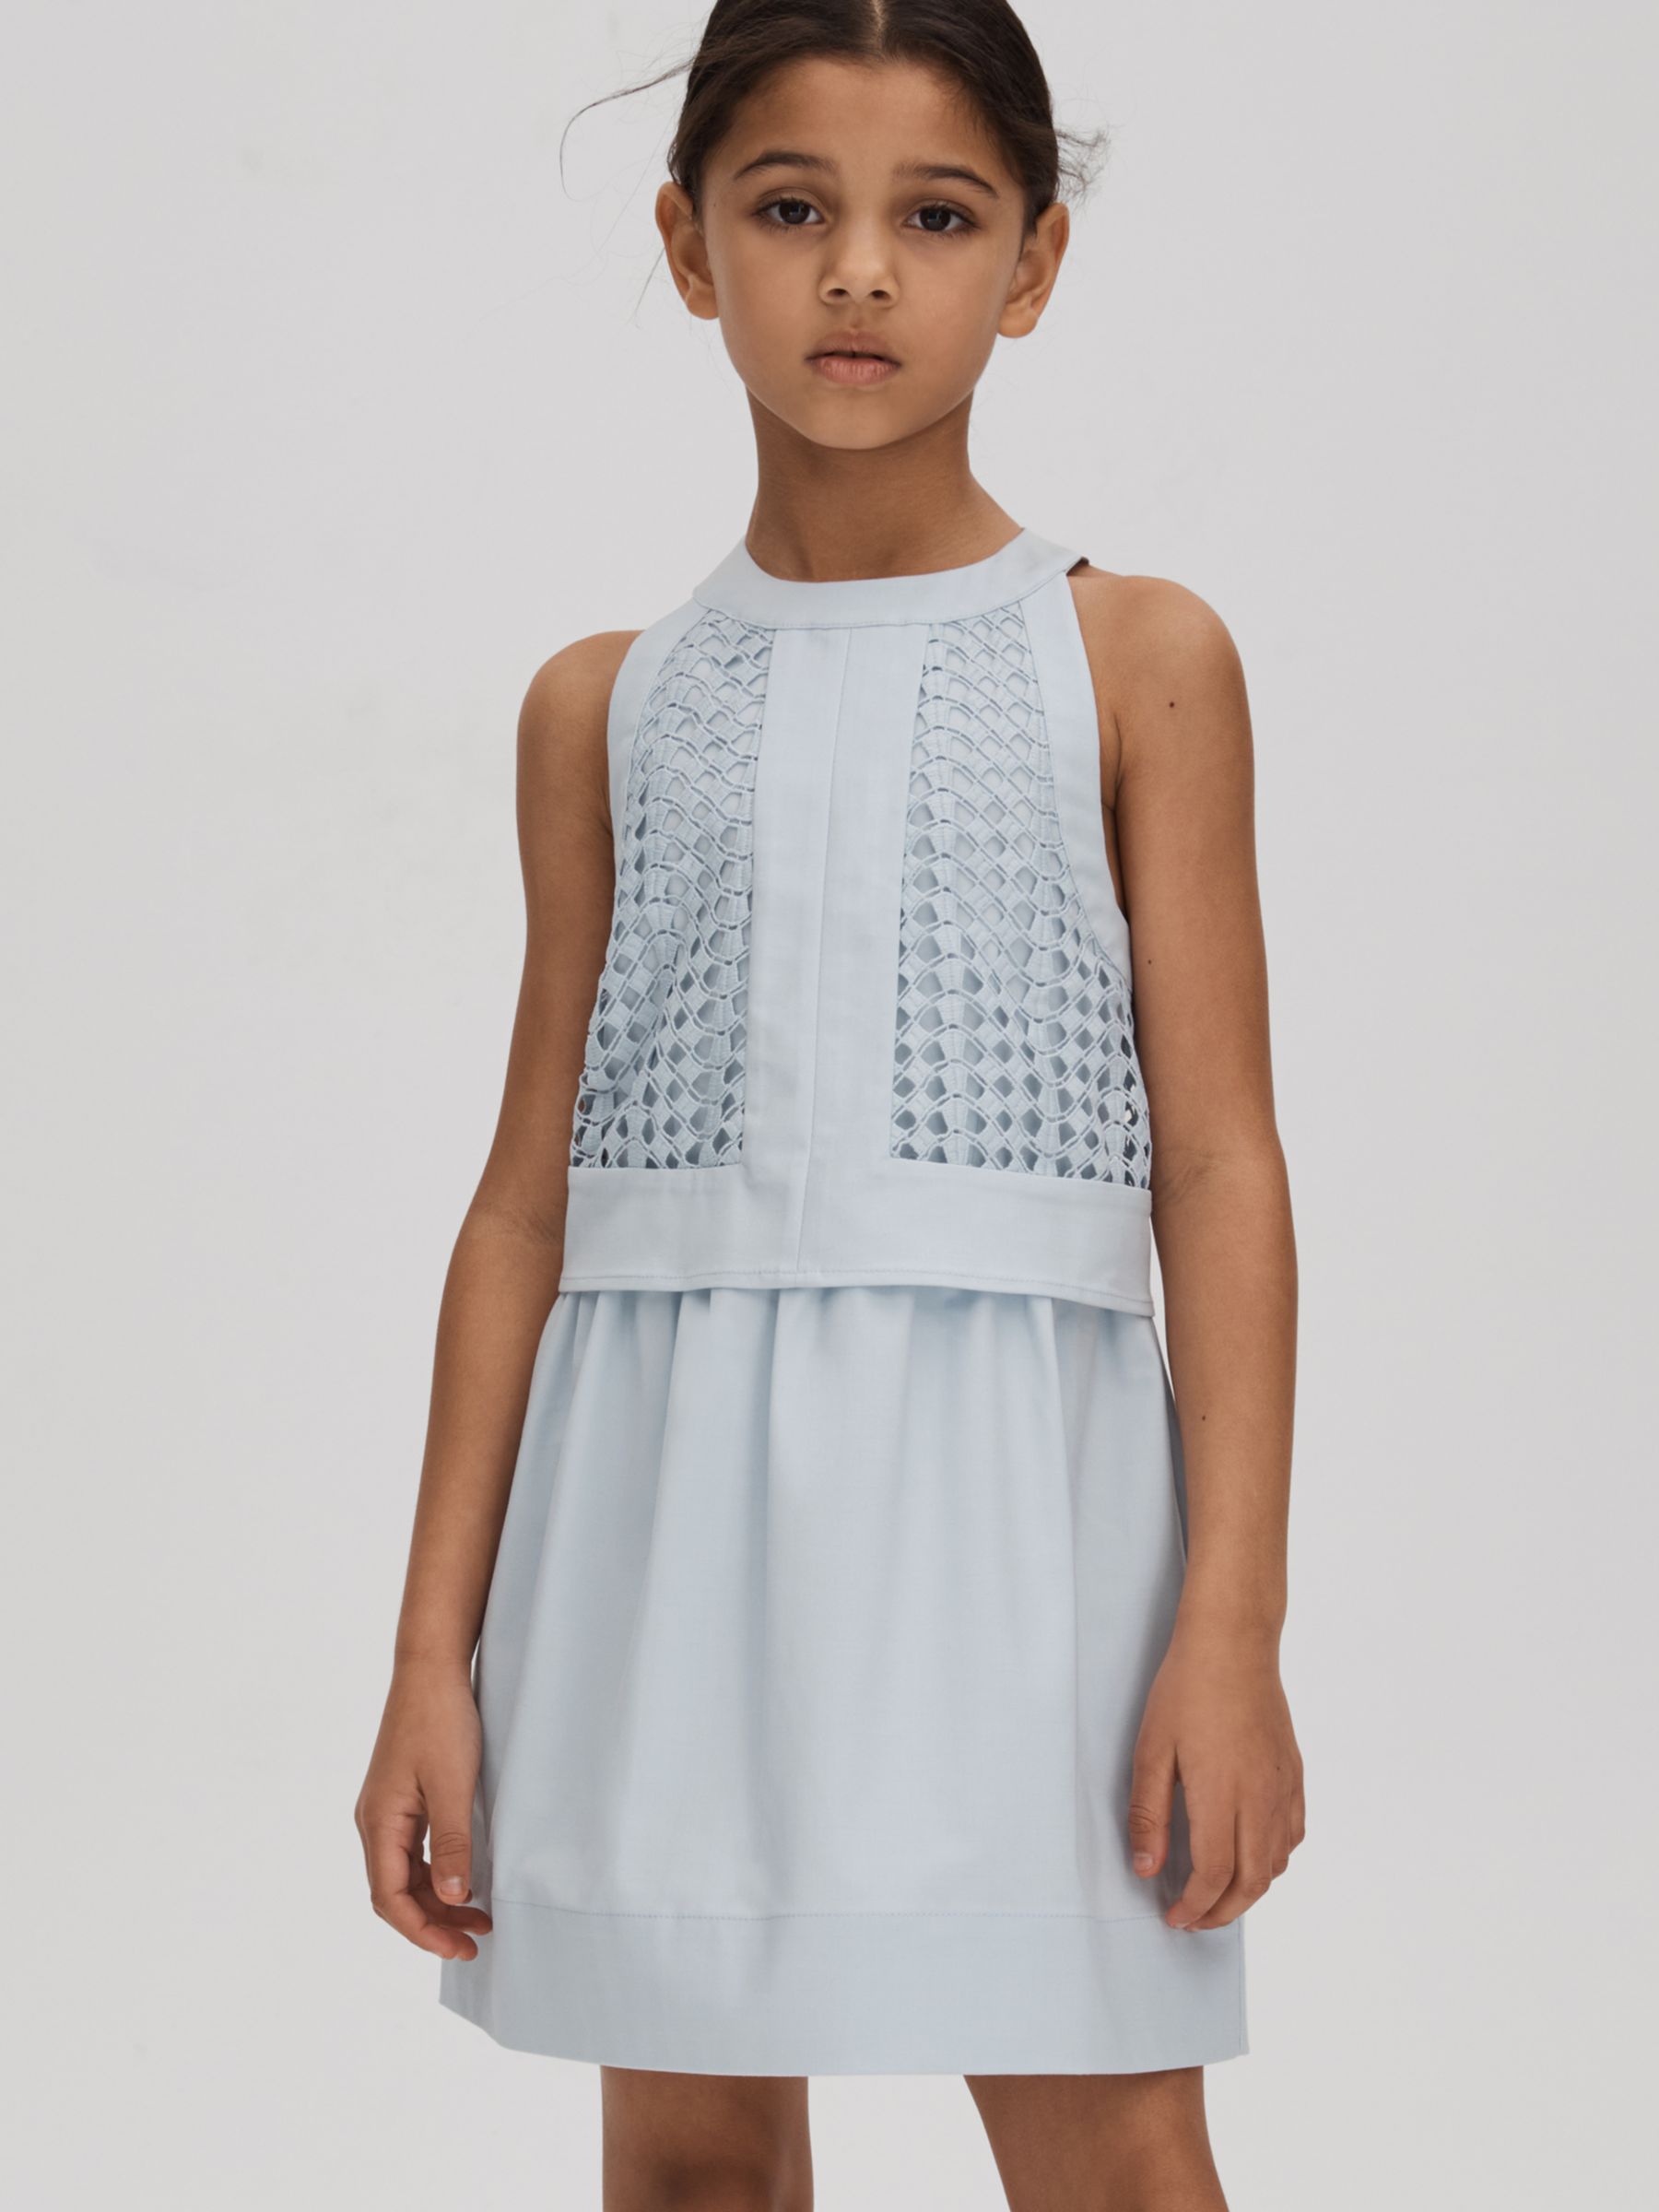 Buy Reiss Kids' Eden Embroidered Halter Neck Dress, Blue Online at johnlewis.com